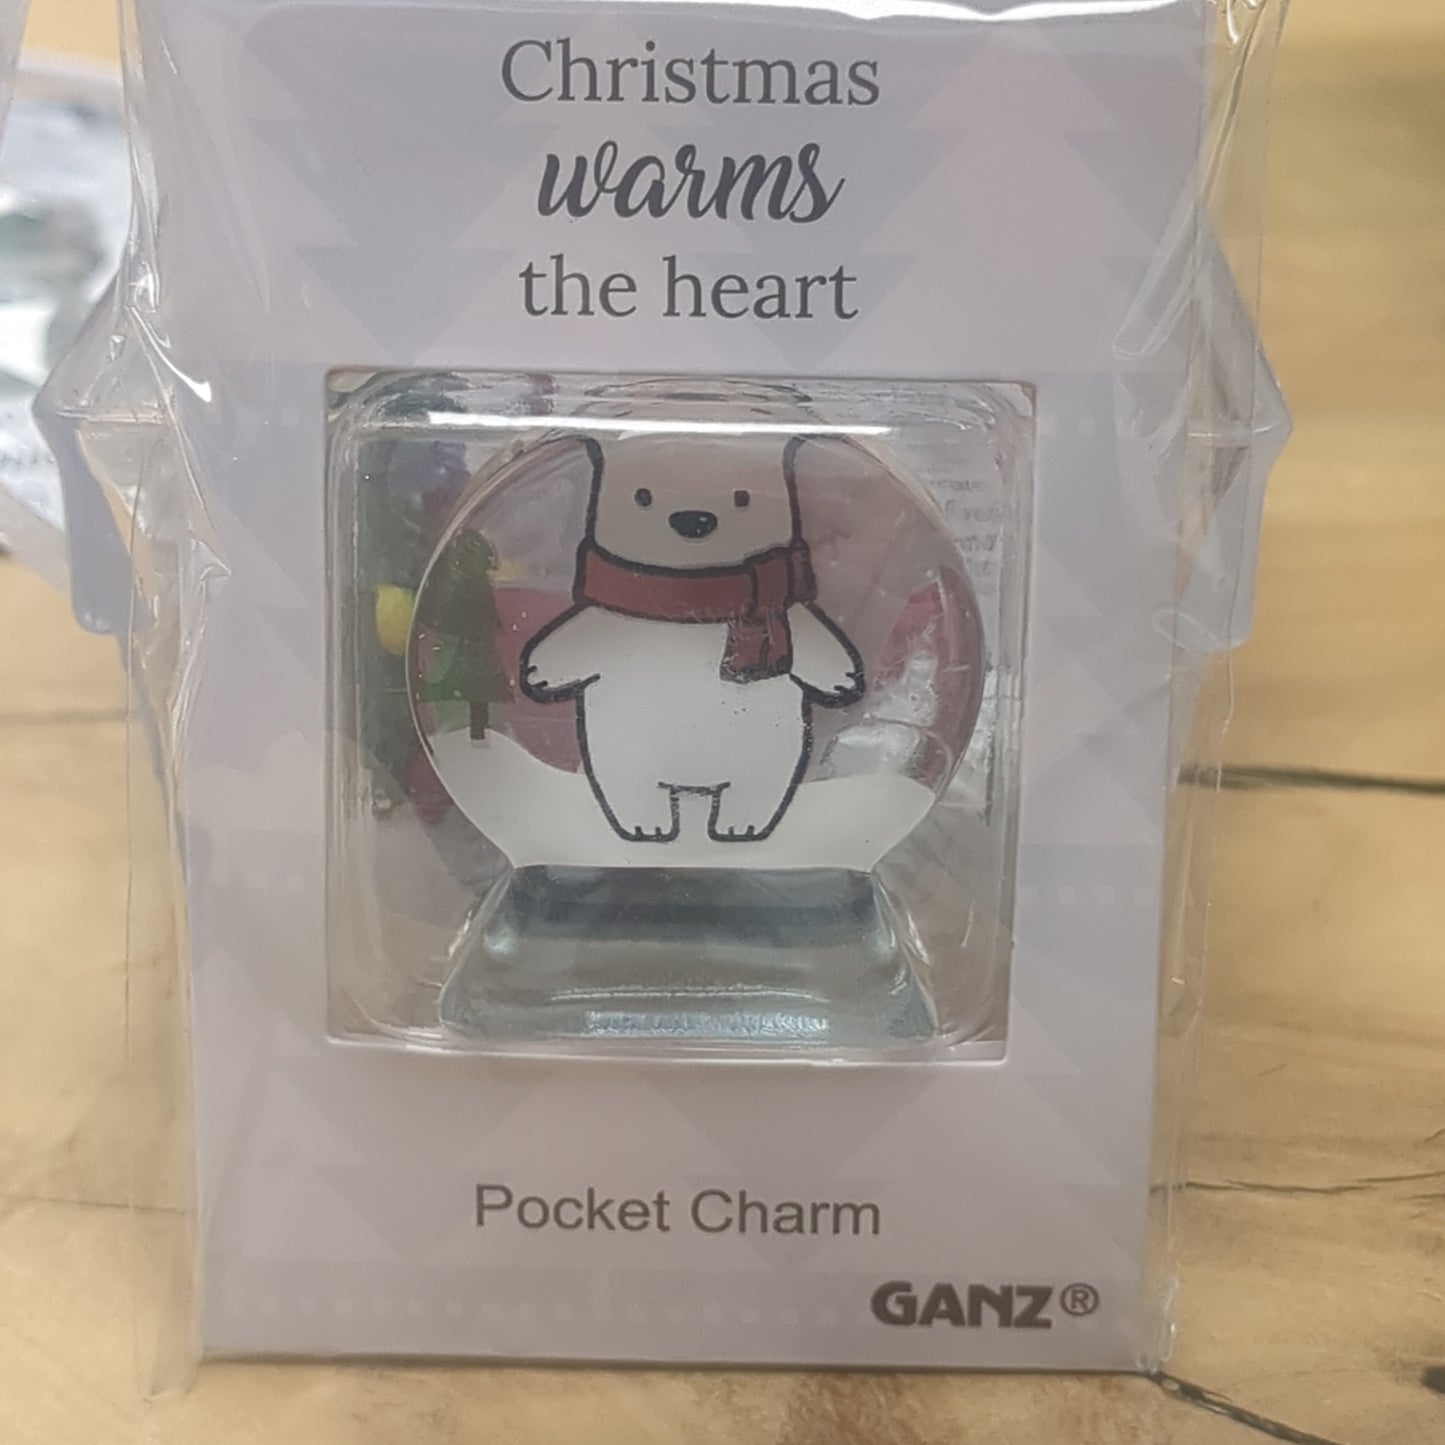 Pocket charm snow globe appearance with polar bear inside. Christmas warms the heart